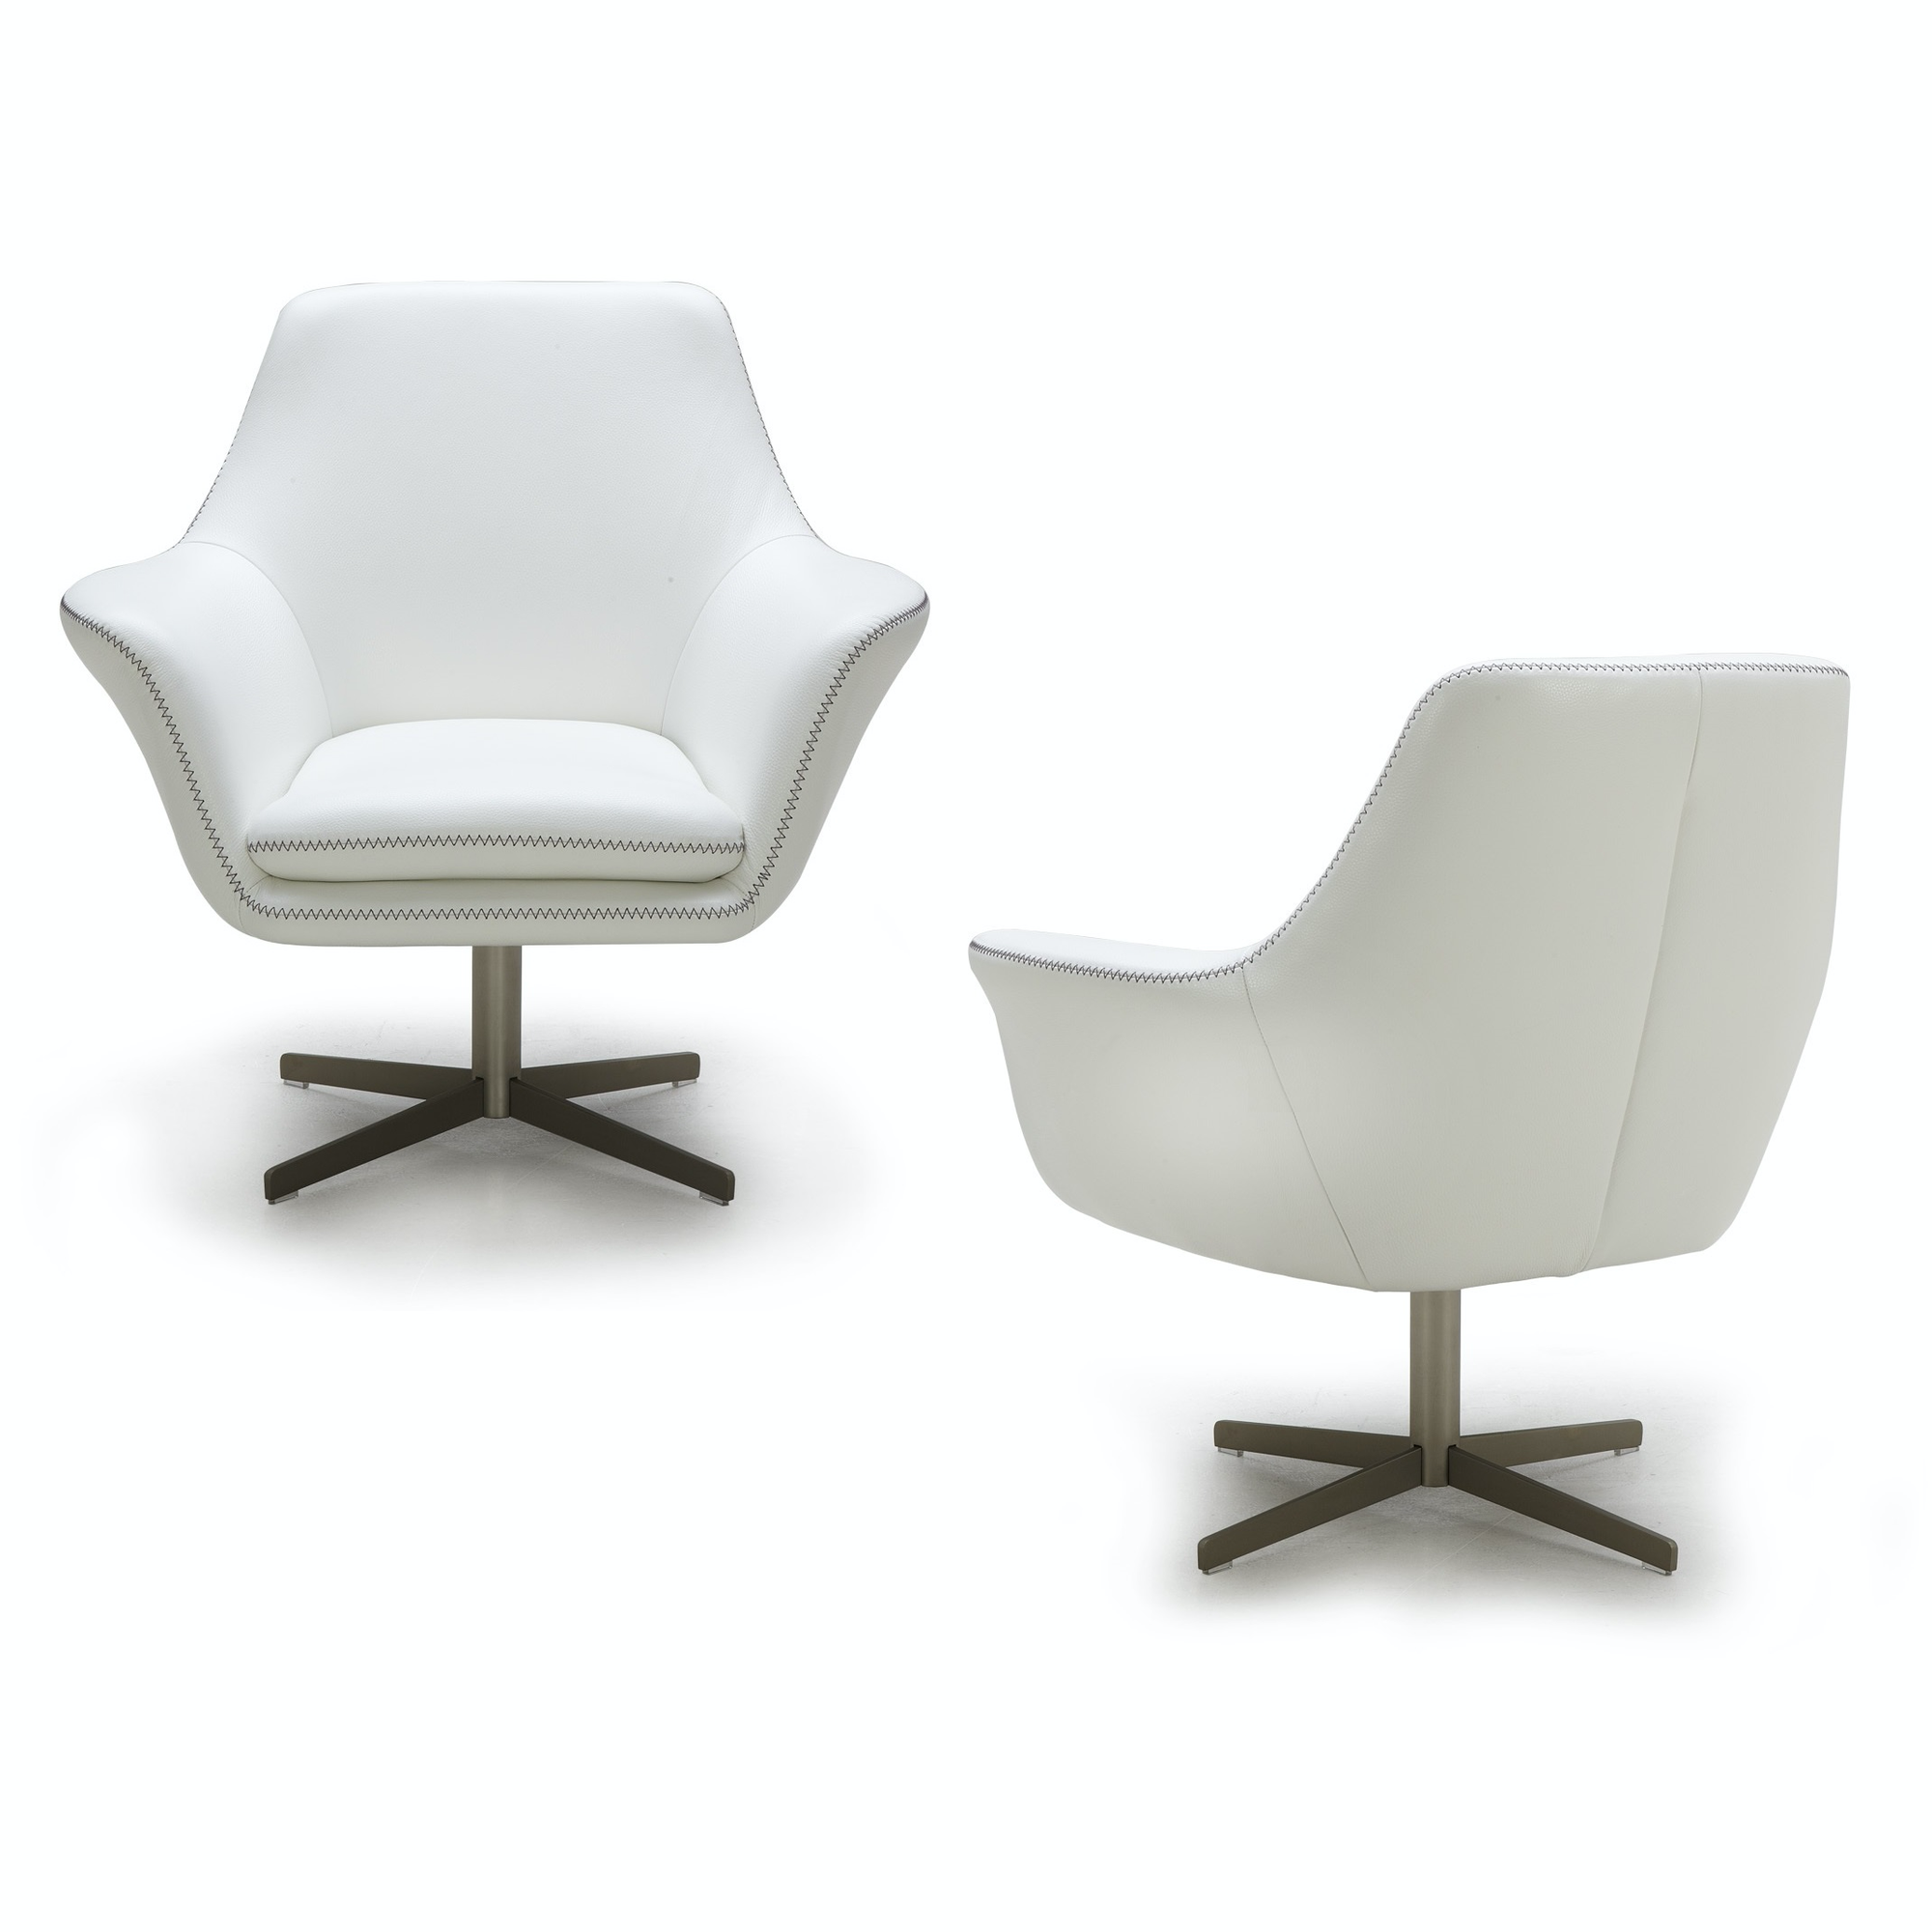 Brianna Swivel Chair - Euro Living Furniture